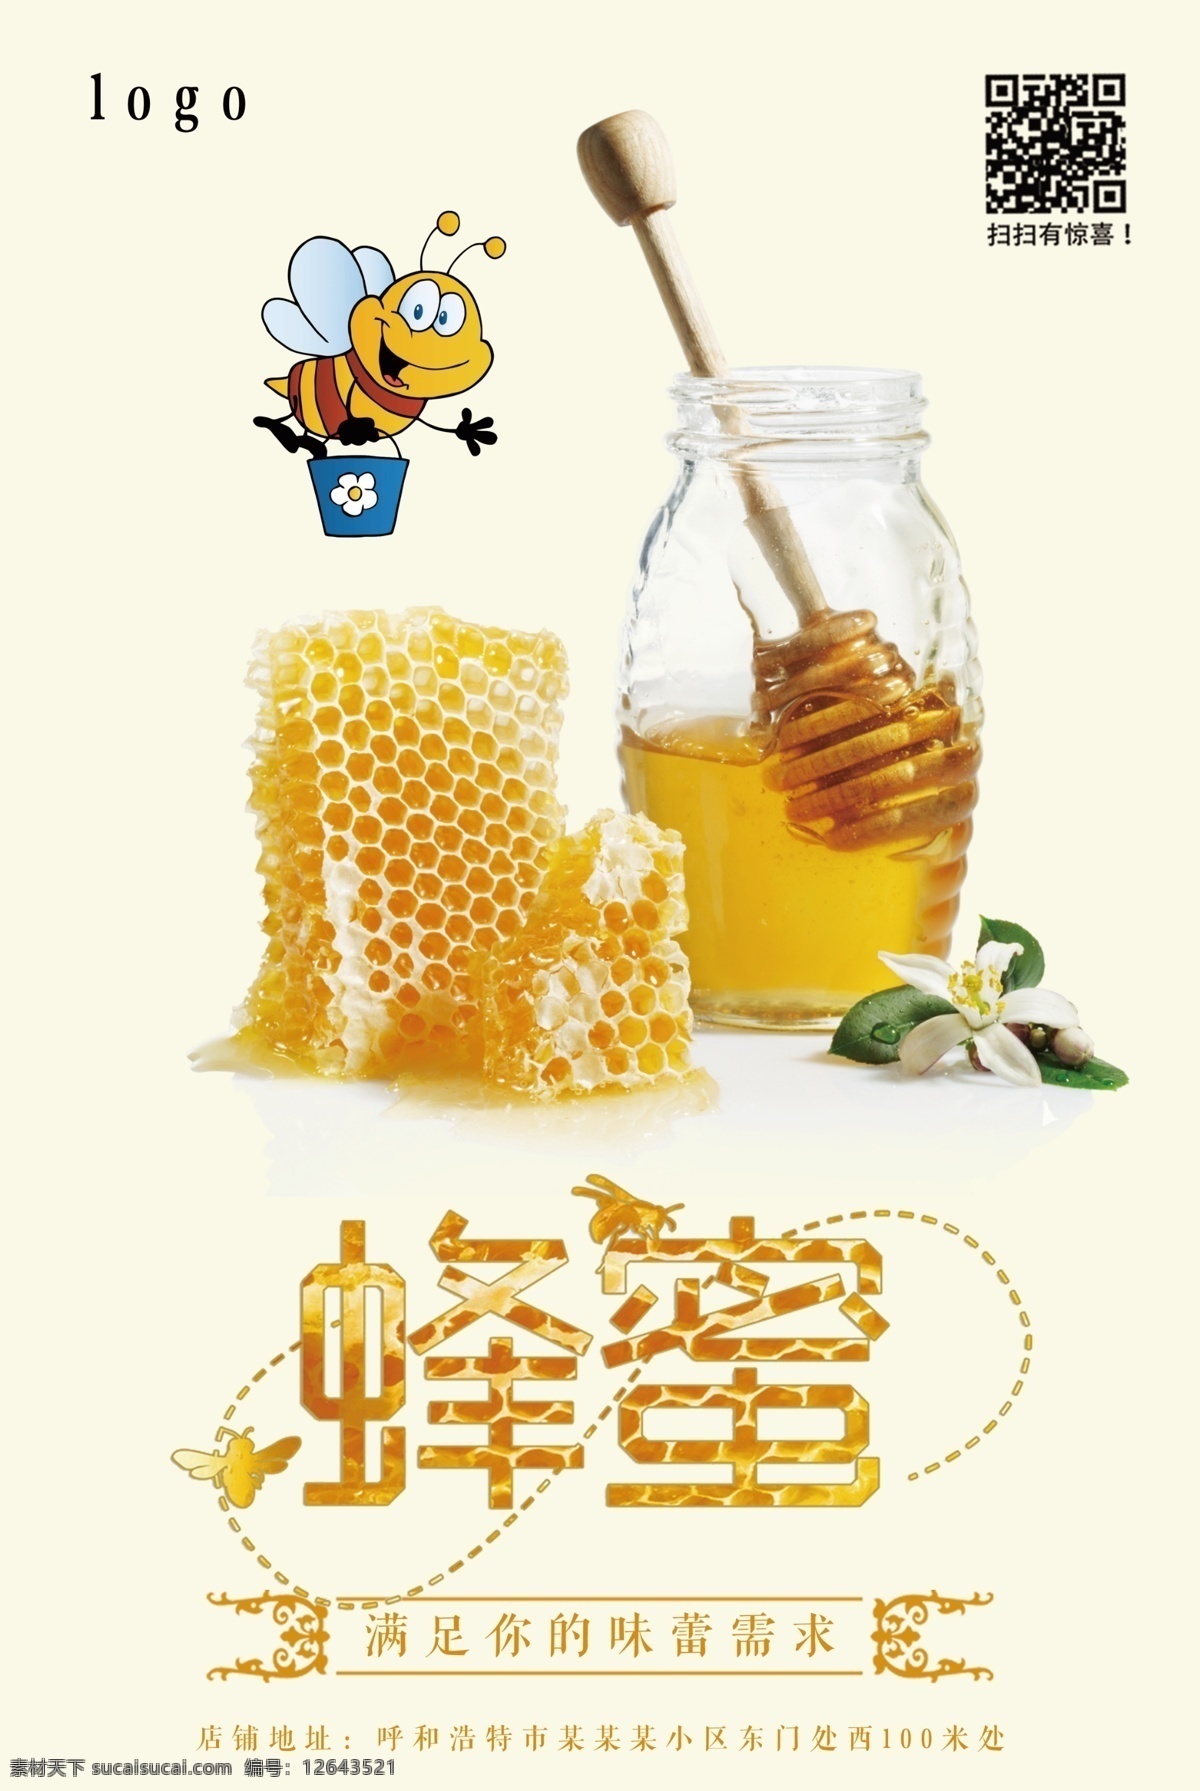 美味 蜂蜜 促销 海报下载 蜜蜂 标题框 绿茶 绿叶 美味蜂蜜 卡通蜜蜂 蜂蜜元素 蜂蜜元素下载 甜蜜 文本框 蜜蜂素材 蜜蜂下载 甜蜜的味道 蜂巢 蜜巢